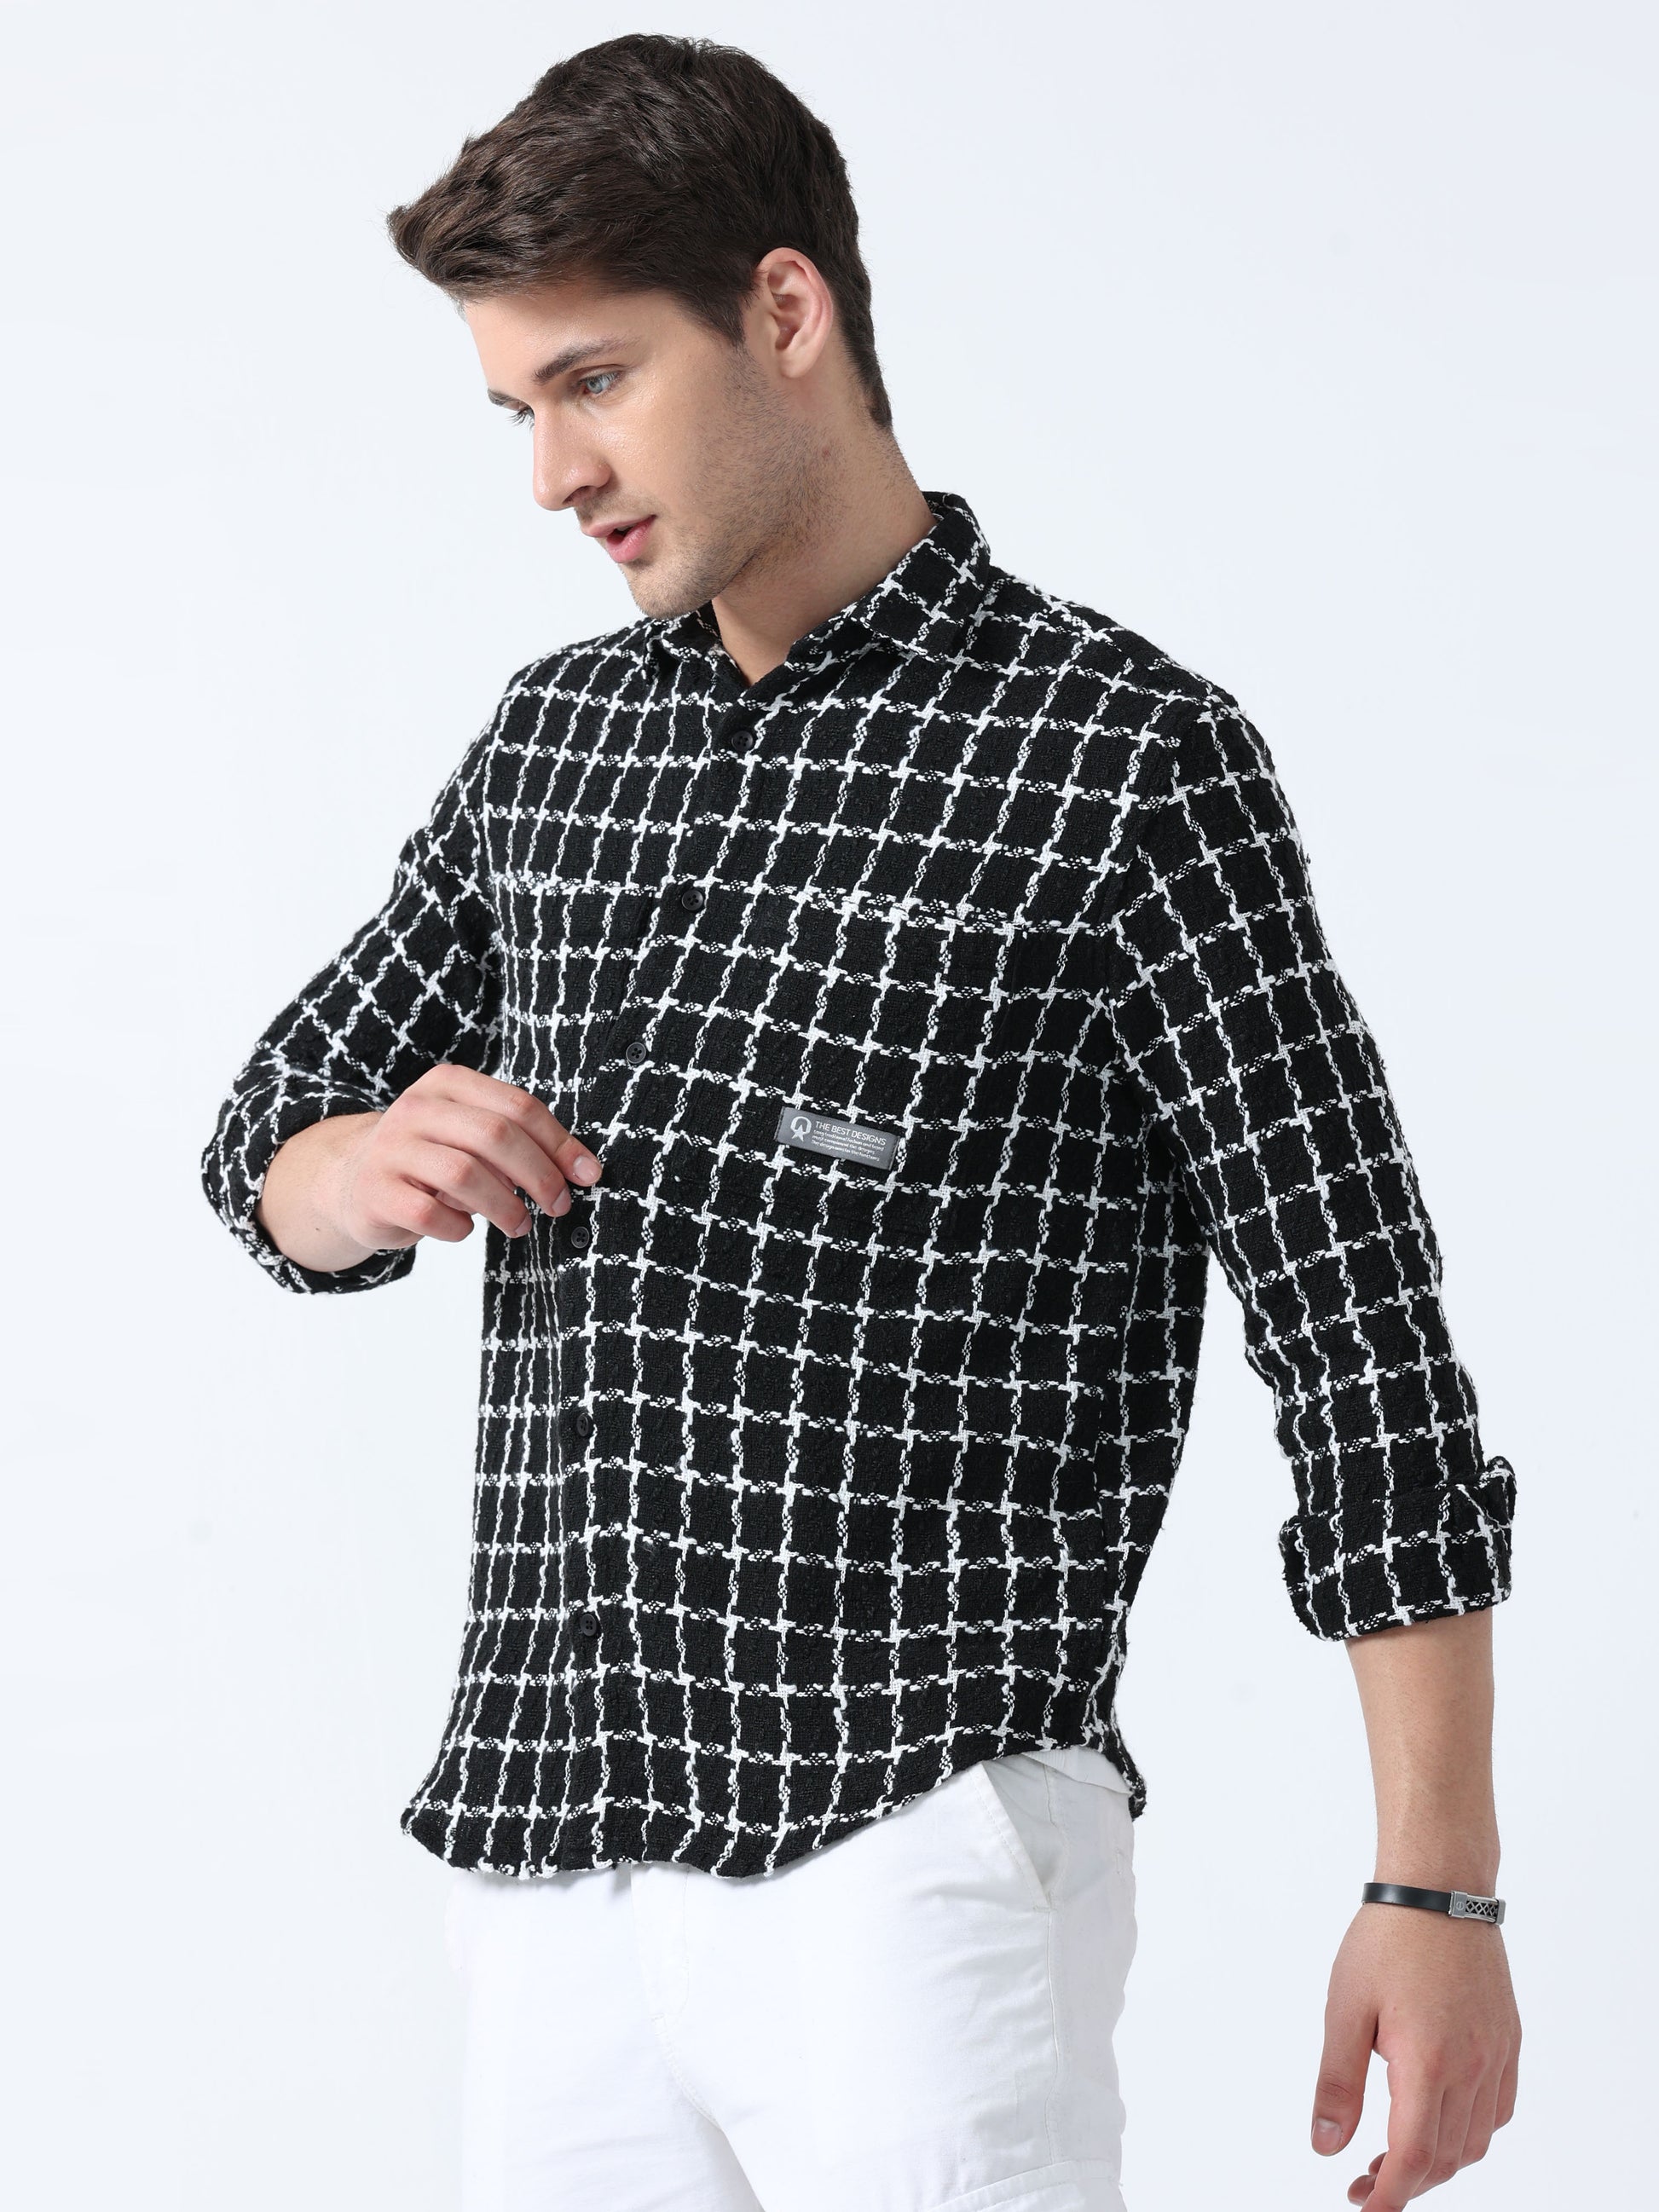  Imported Fabric Black Stylish Men's Full Sleeve Checked shirt